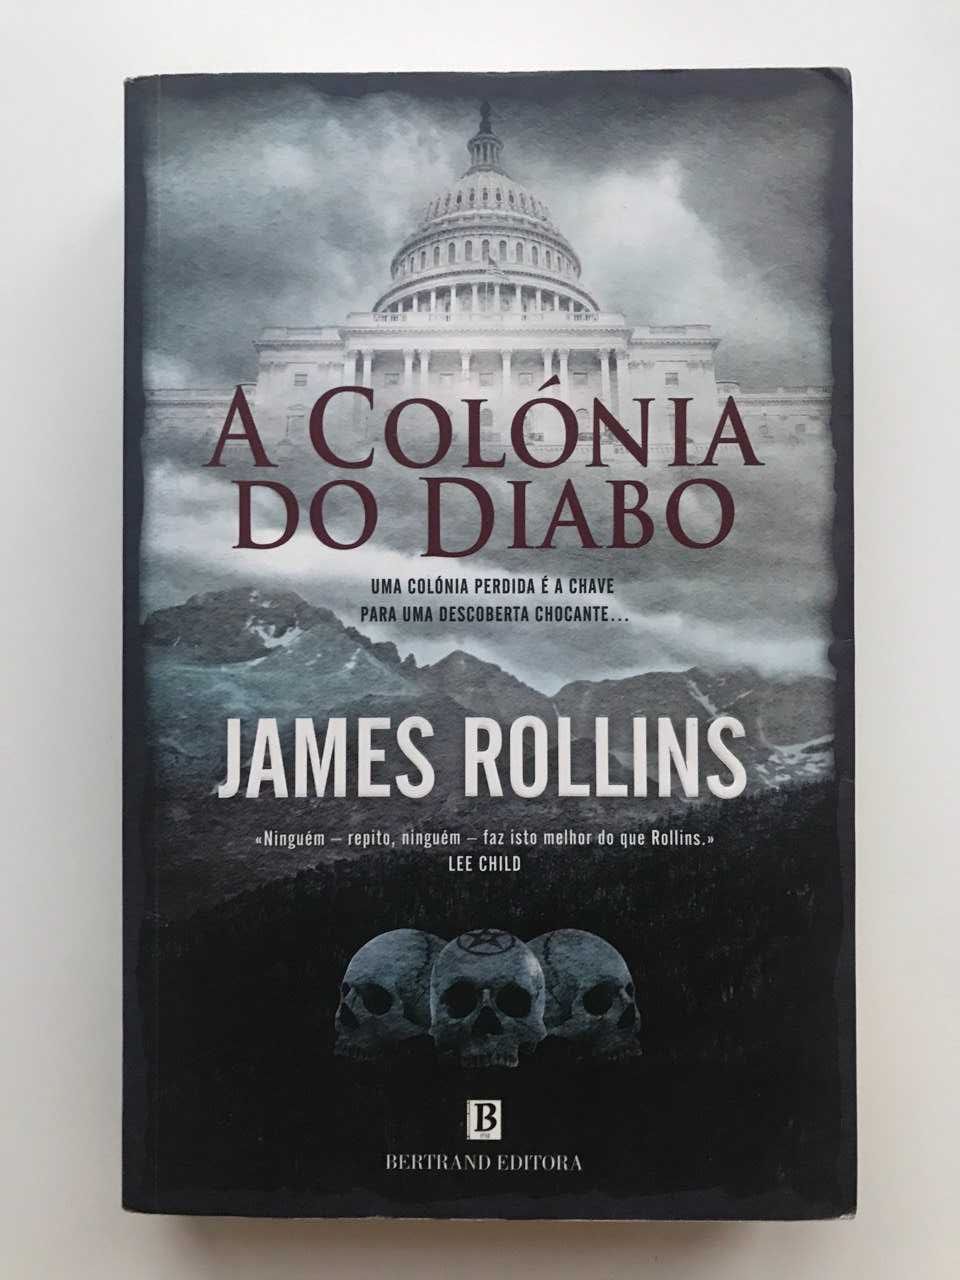 Livro 'A Colónia do Diabo' - James Rollins